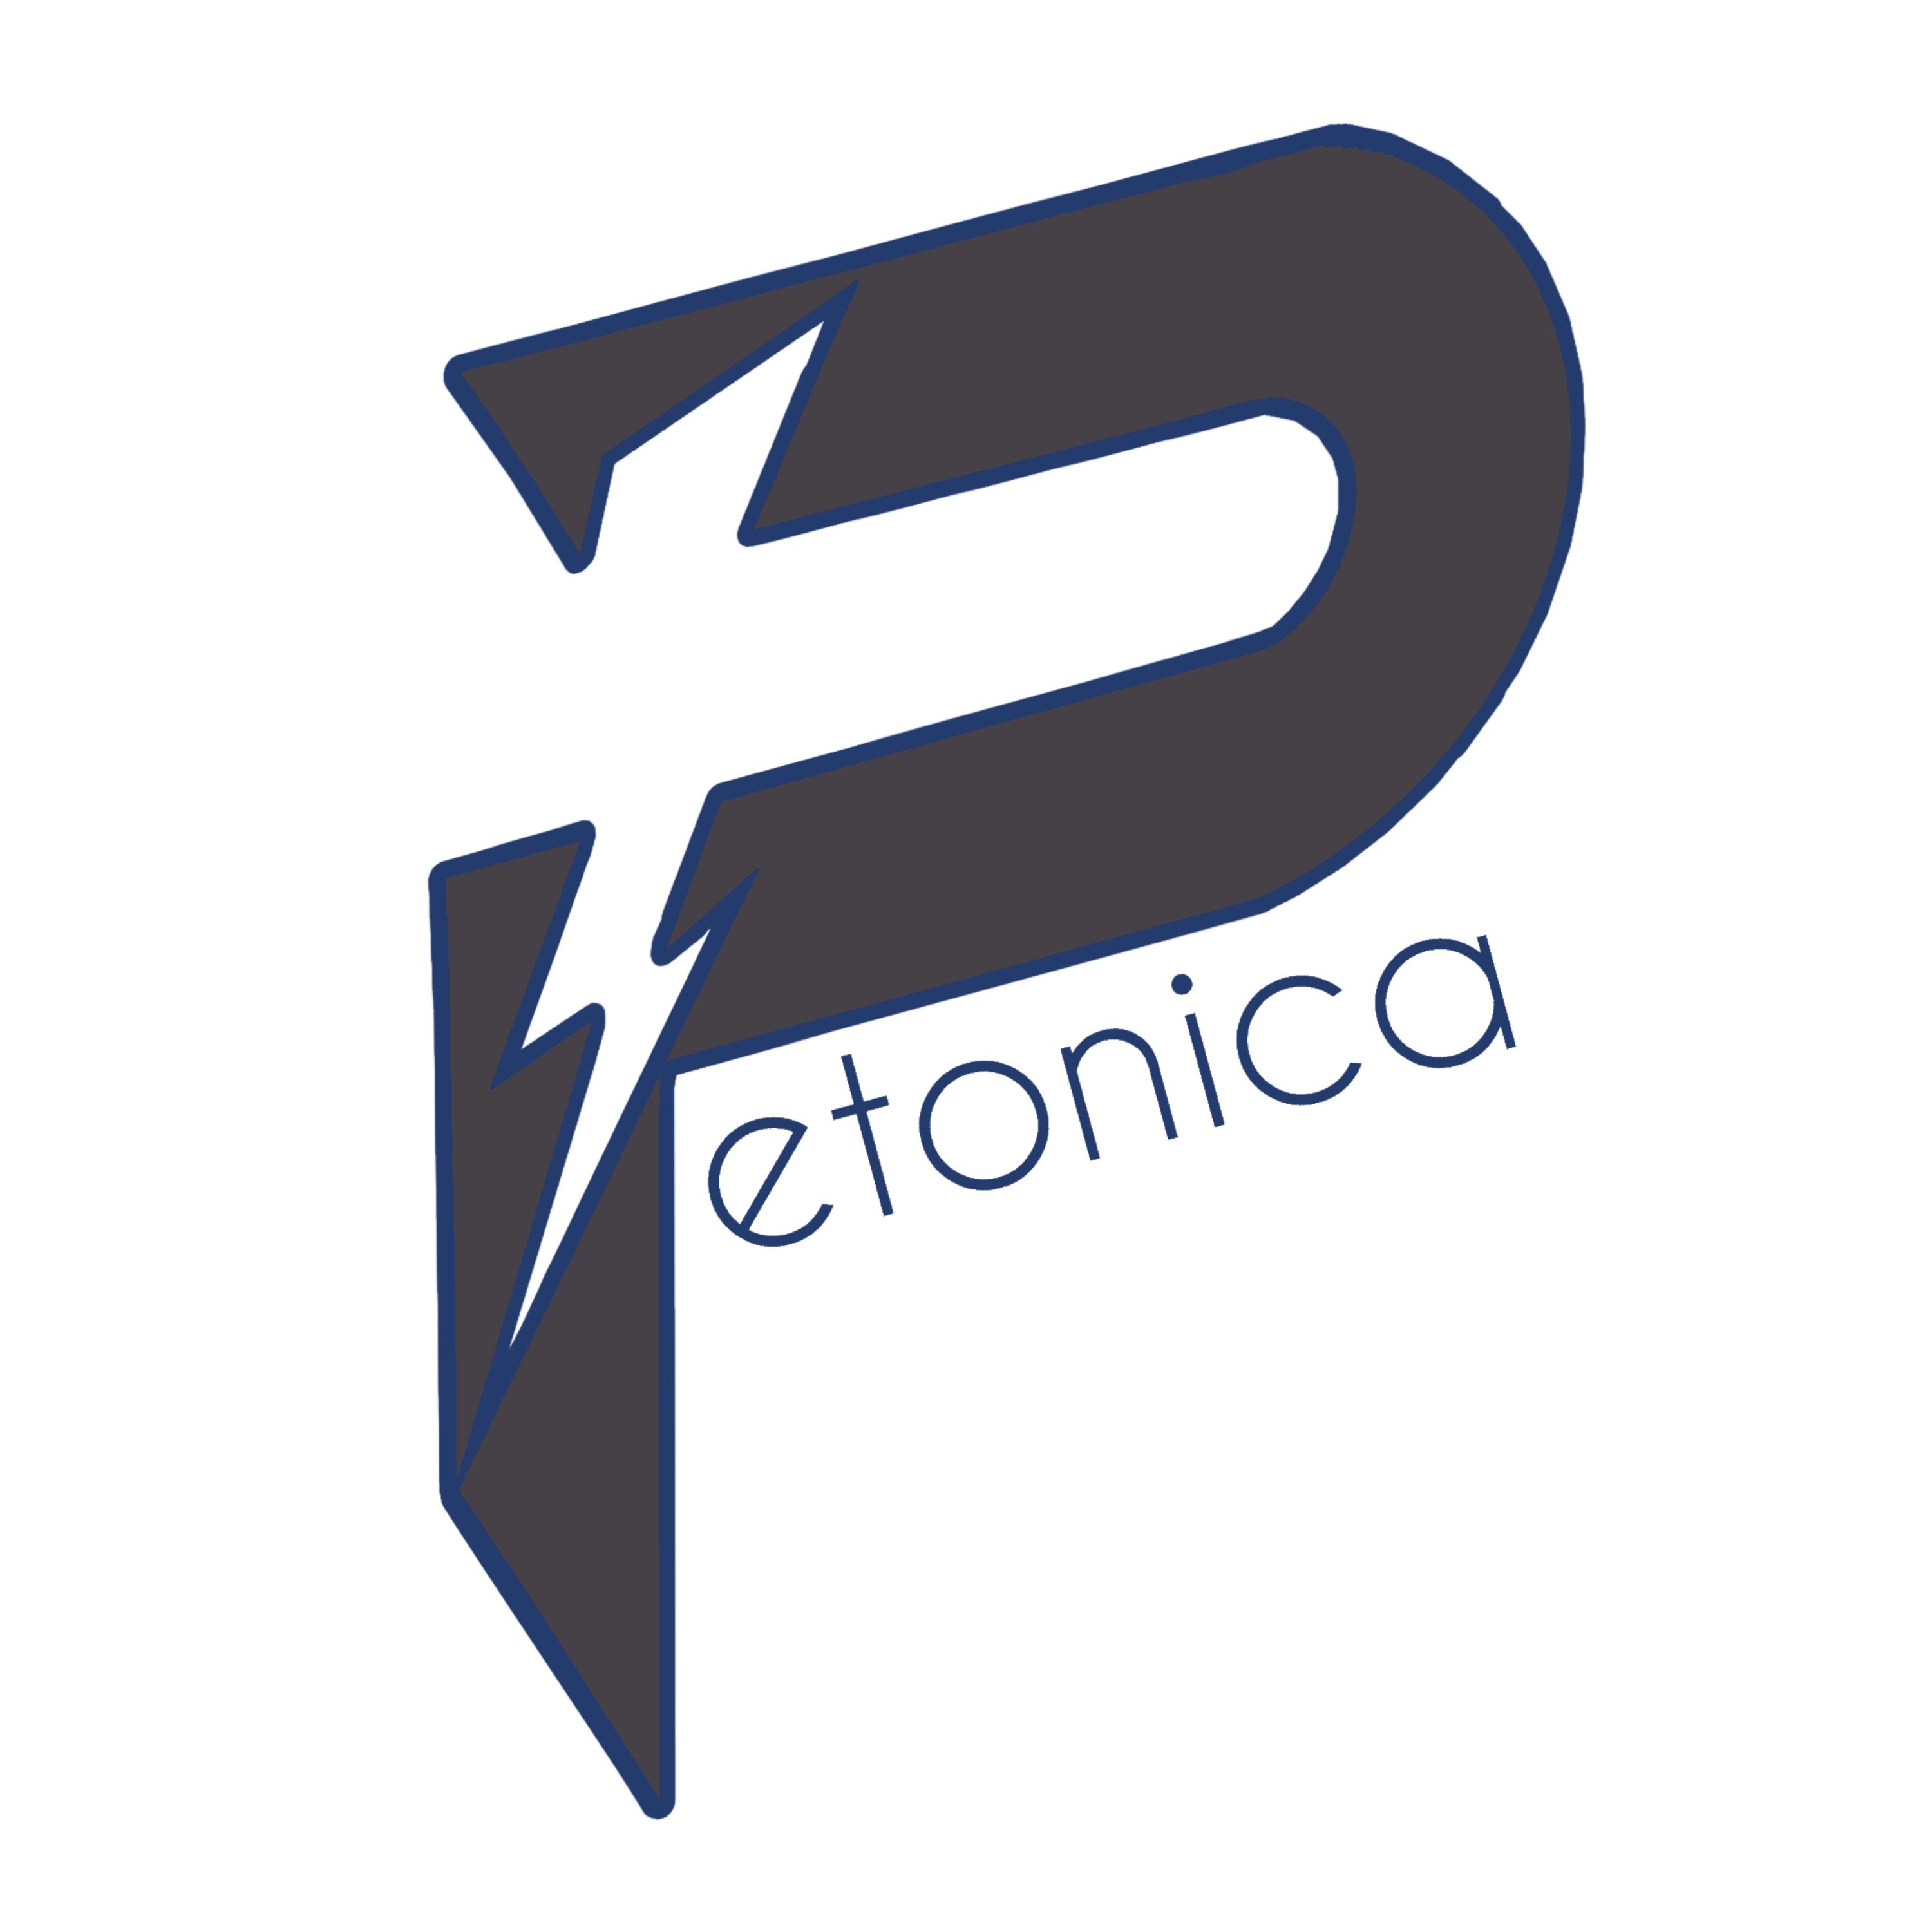 Petonica Electric Company Logo